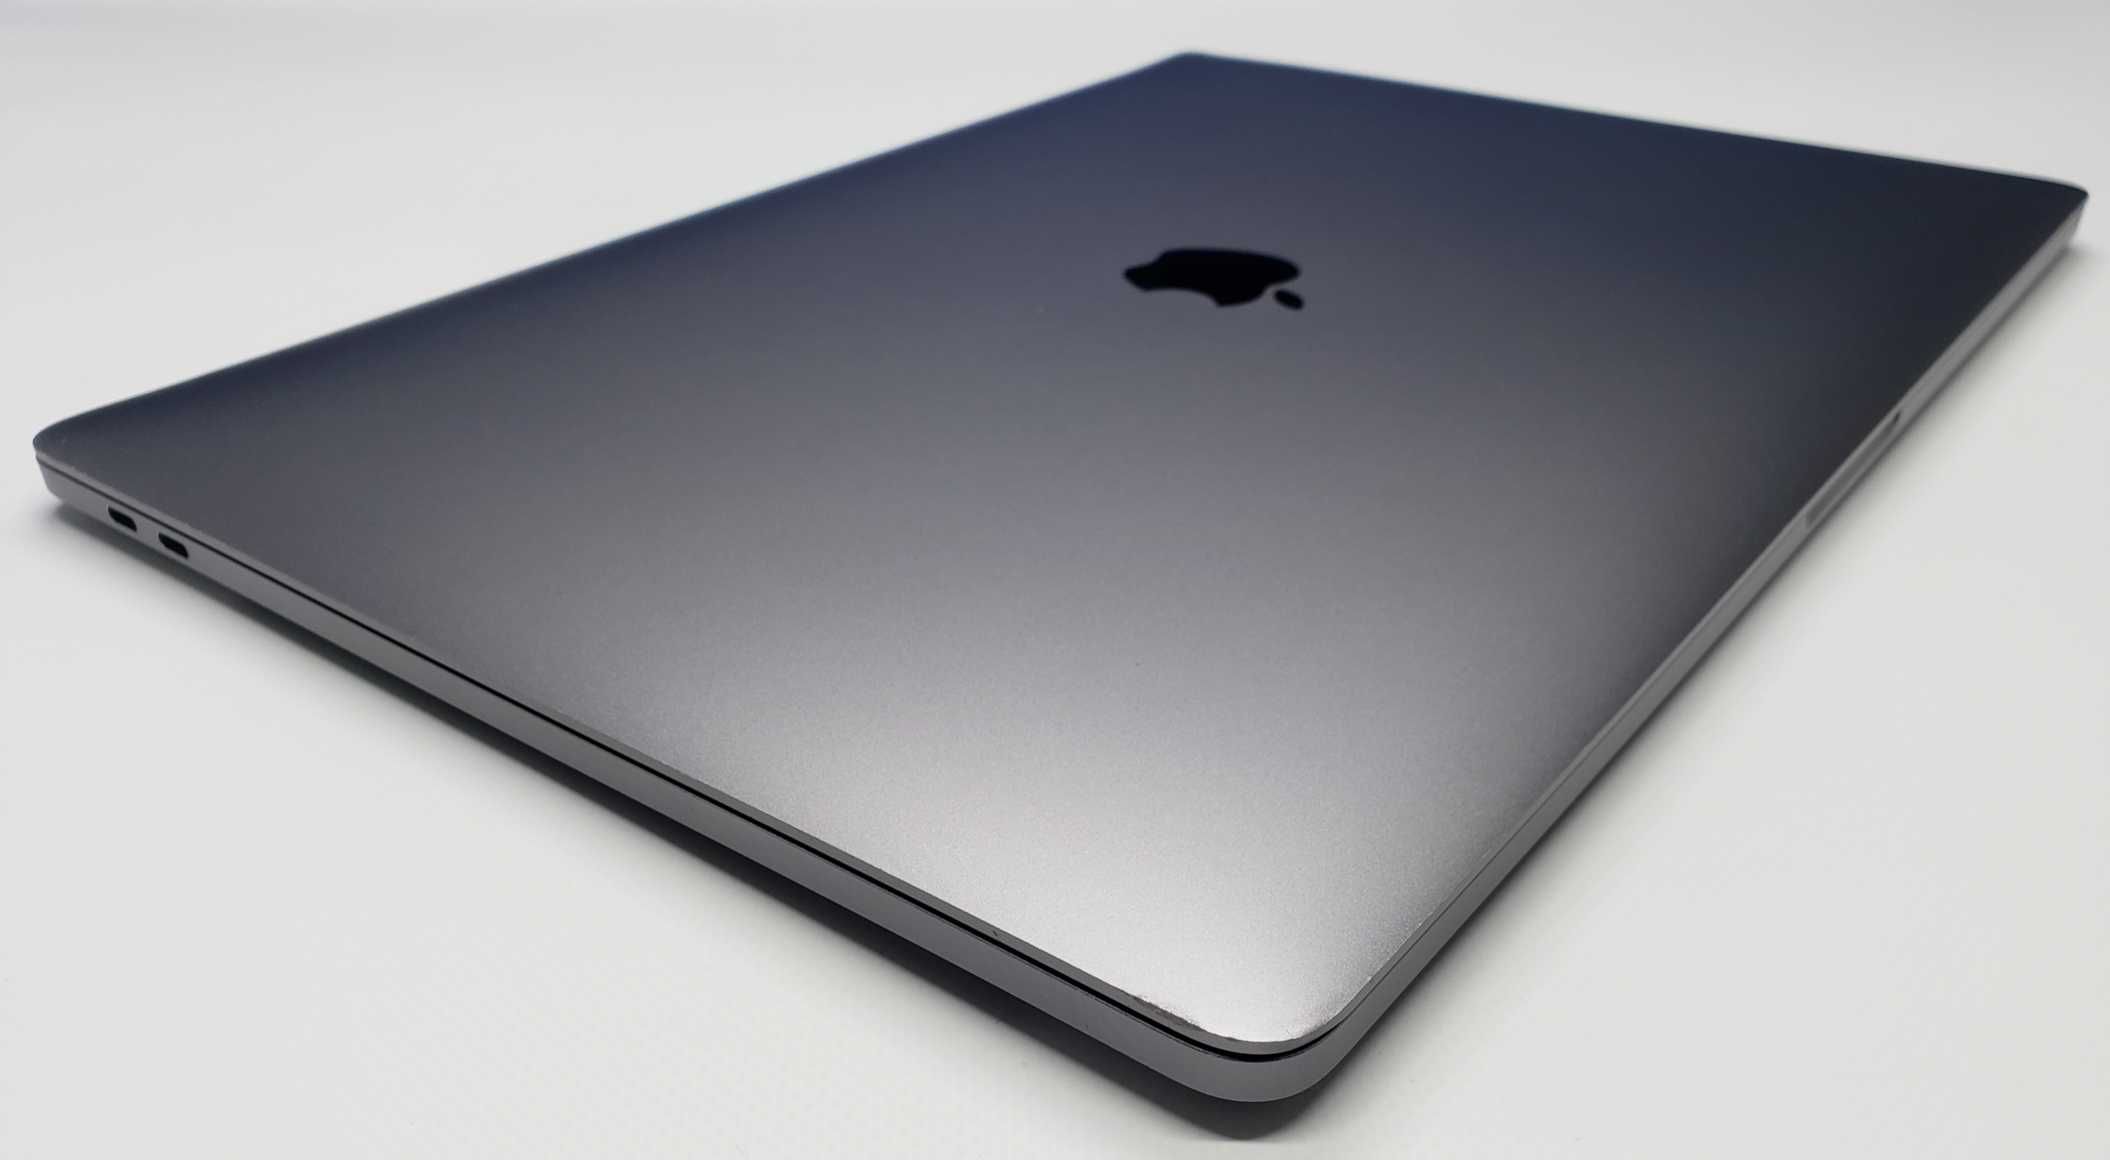 Уценка! Ноутбук MacBook Pro 15’’ MLH32 2016 i7/16/256/Pro450, 2GB